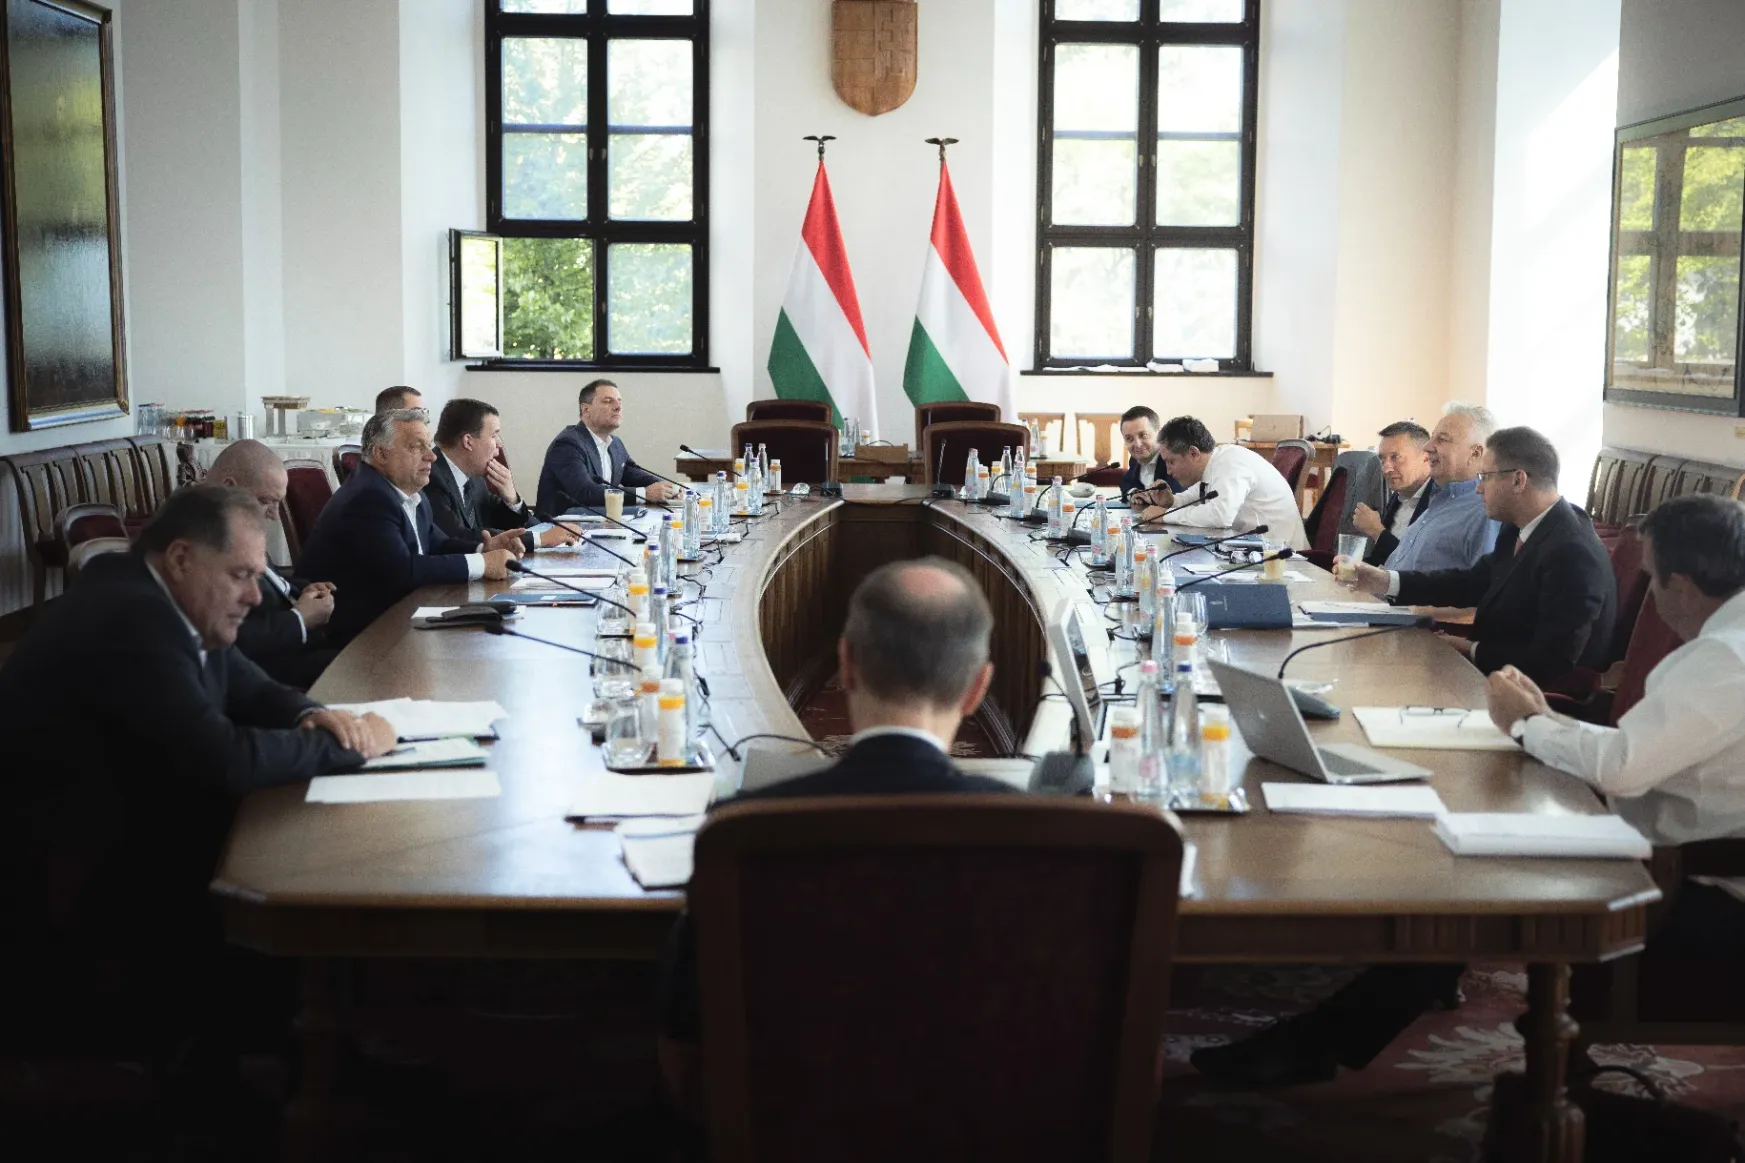 Energia-veszélyhelyzet miatt összehívta a kabinetet Orbán